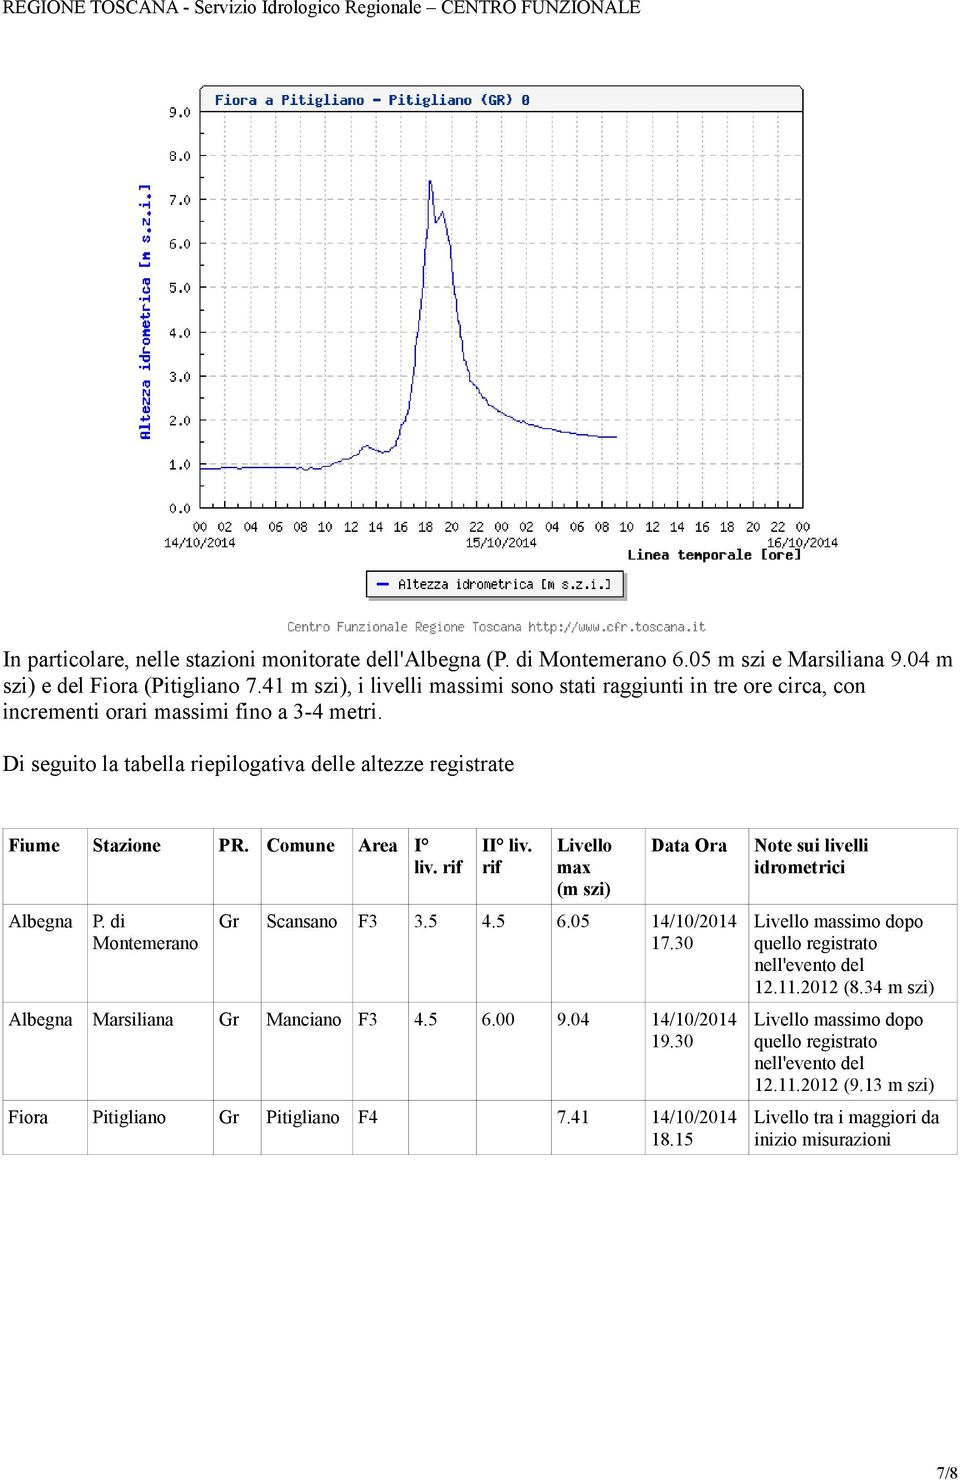 Comune Area I liv. rif II liv. rif Livello max (m szi) Data Ora Note sui livelli idrometrici Albegna P. di Montemerano Gr Scansano 3.5 4.5 6.05 14//14 Livello massimo dopo 17.